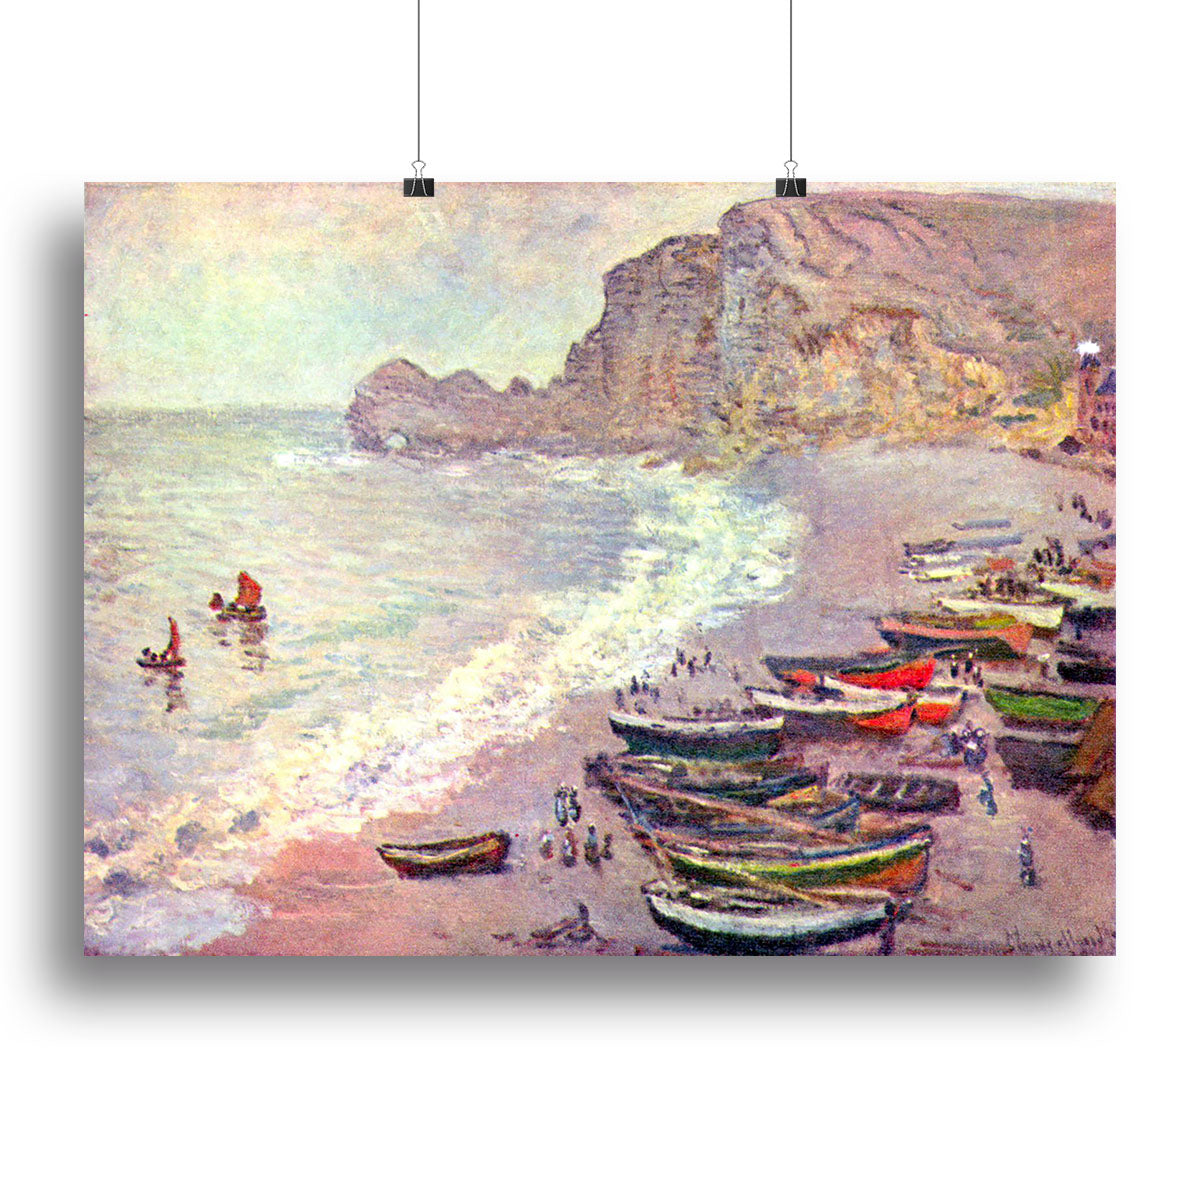 Etretat the beach and La Porte d'Amont by Monet Canvas Print or Poster - Canvas Art Rocks - 2